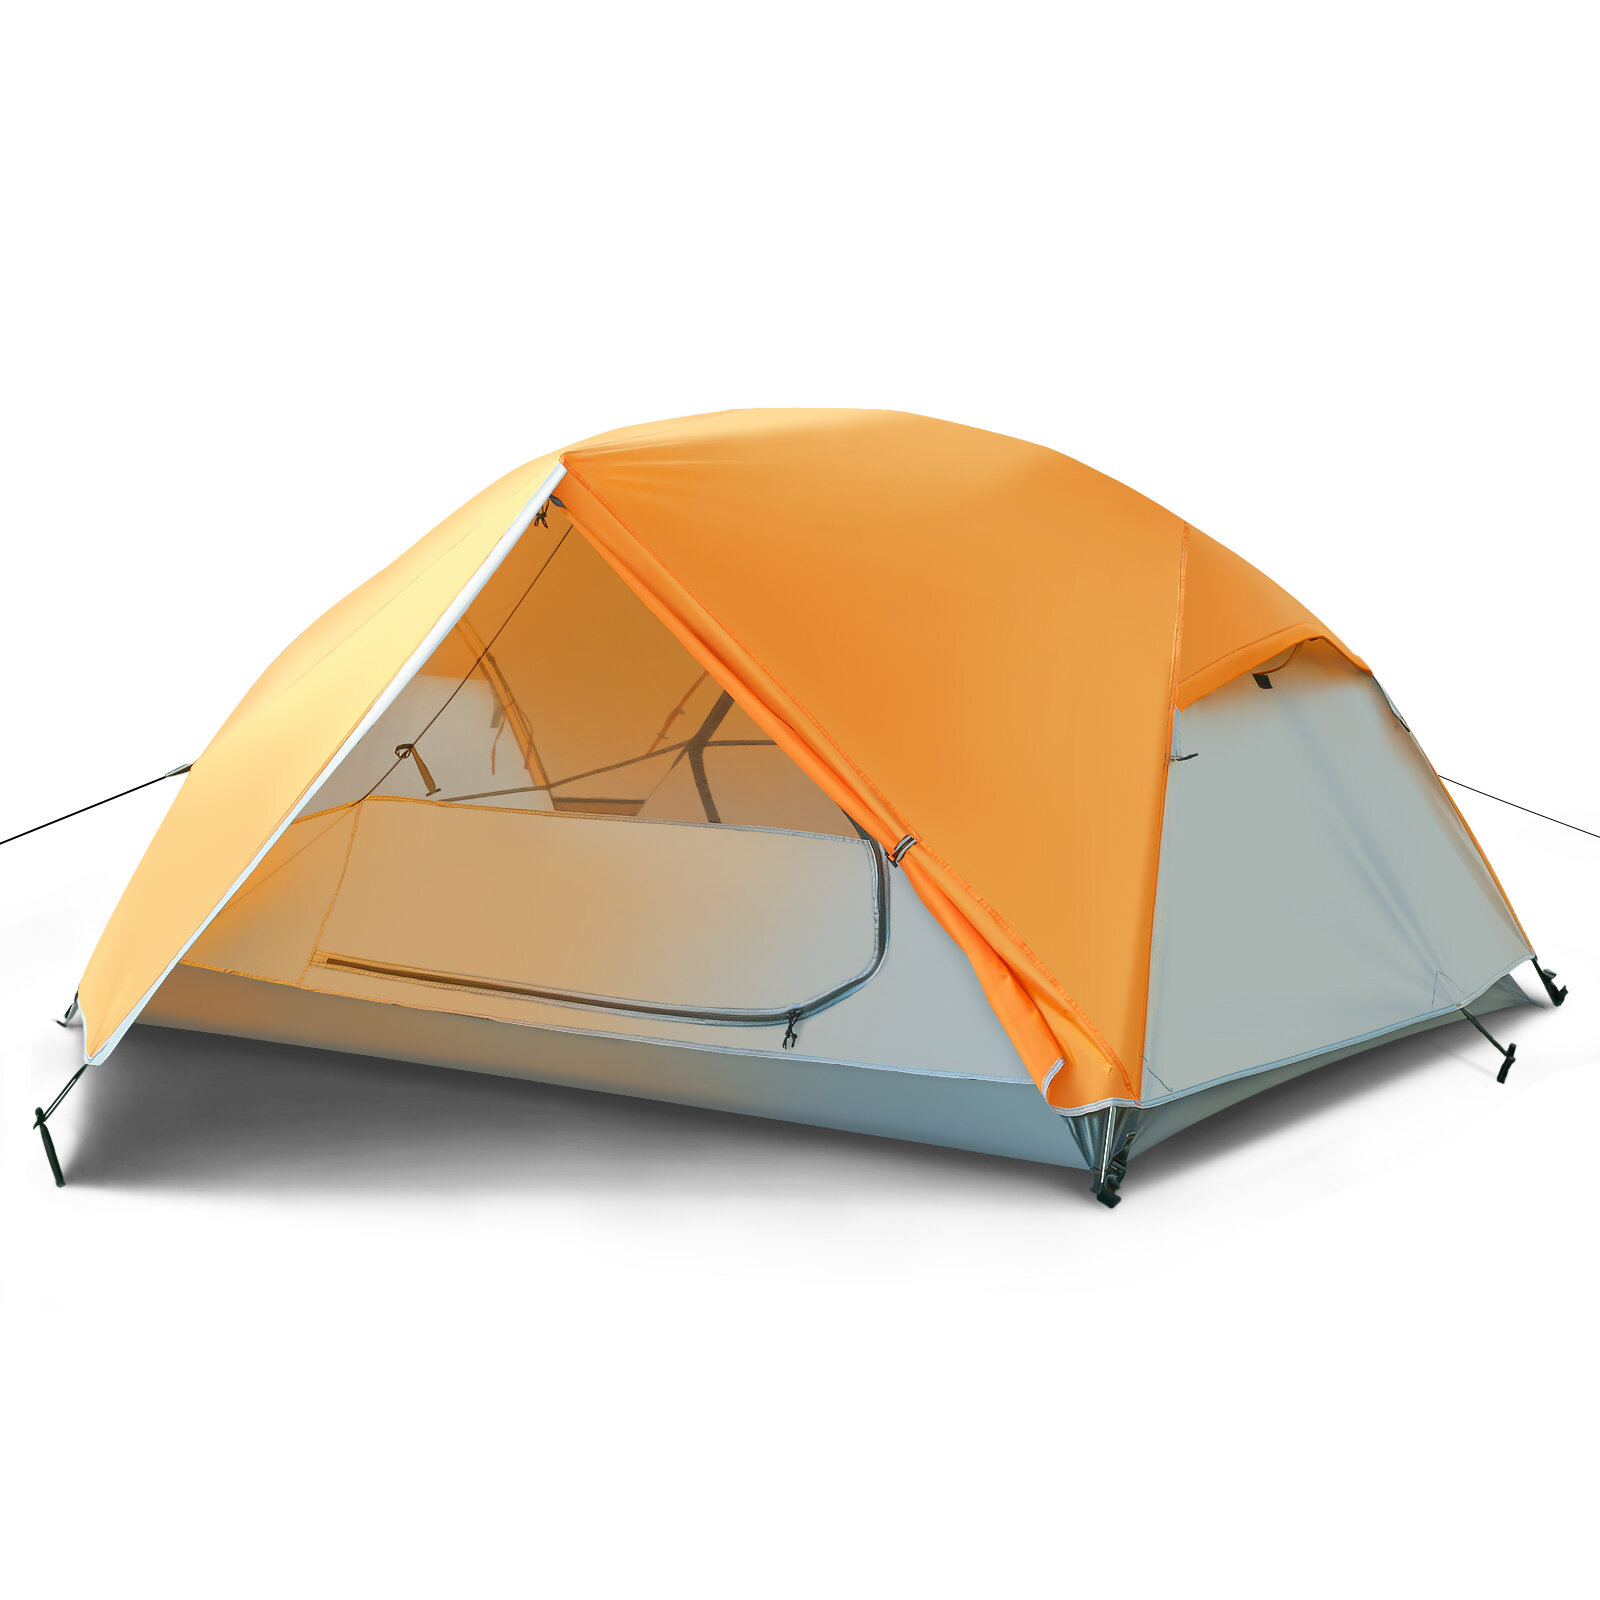 Tendas de acampamento Tooca 2 Person Camping Tents Tendas de acampamento leves, portáteis, à prova d'água e fáceis de montar para acampar e fazer trilhas ao ar livre, com bolsa de transporte